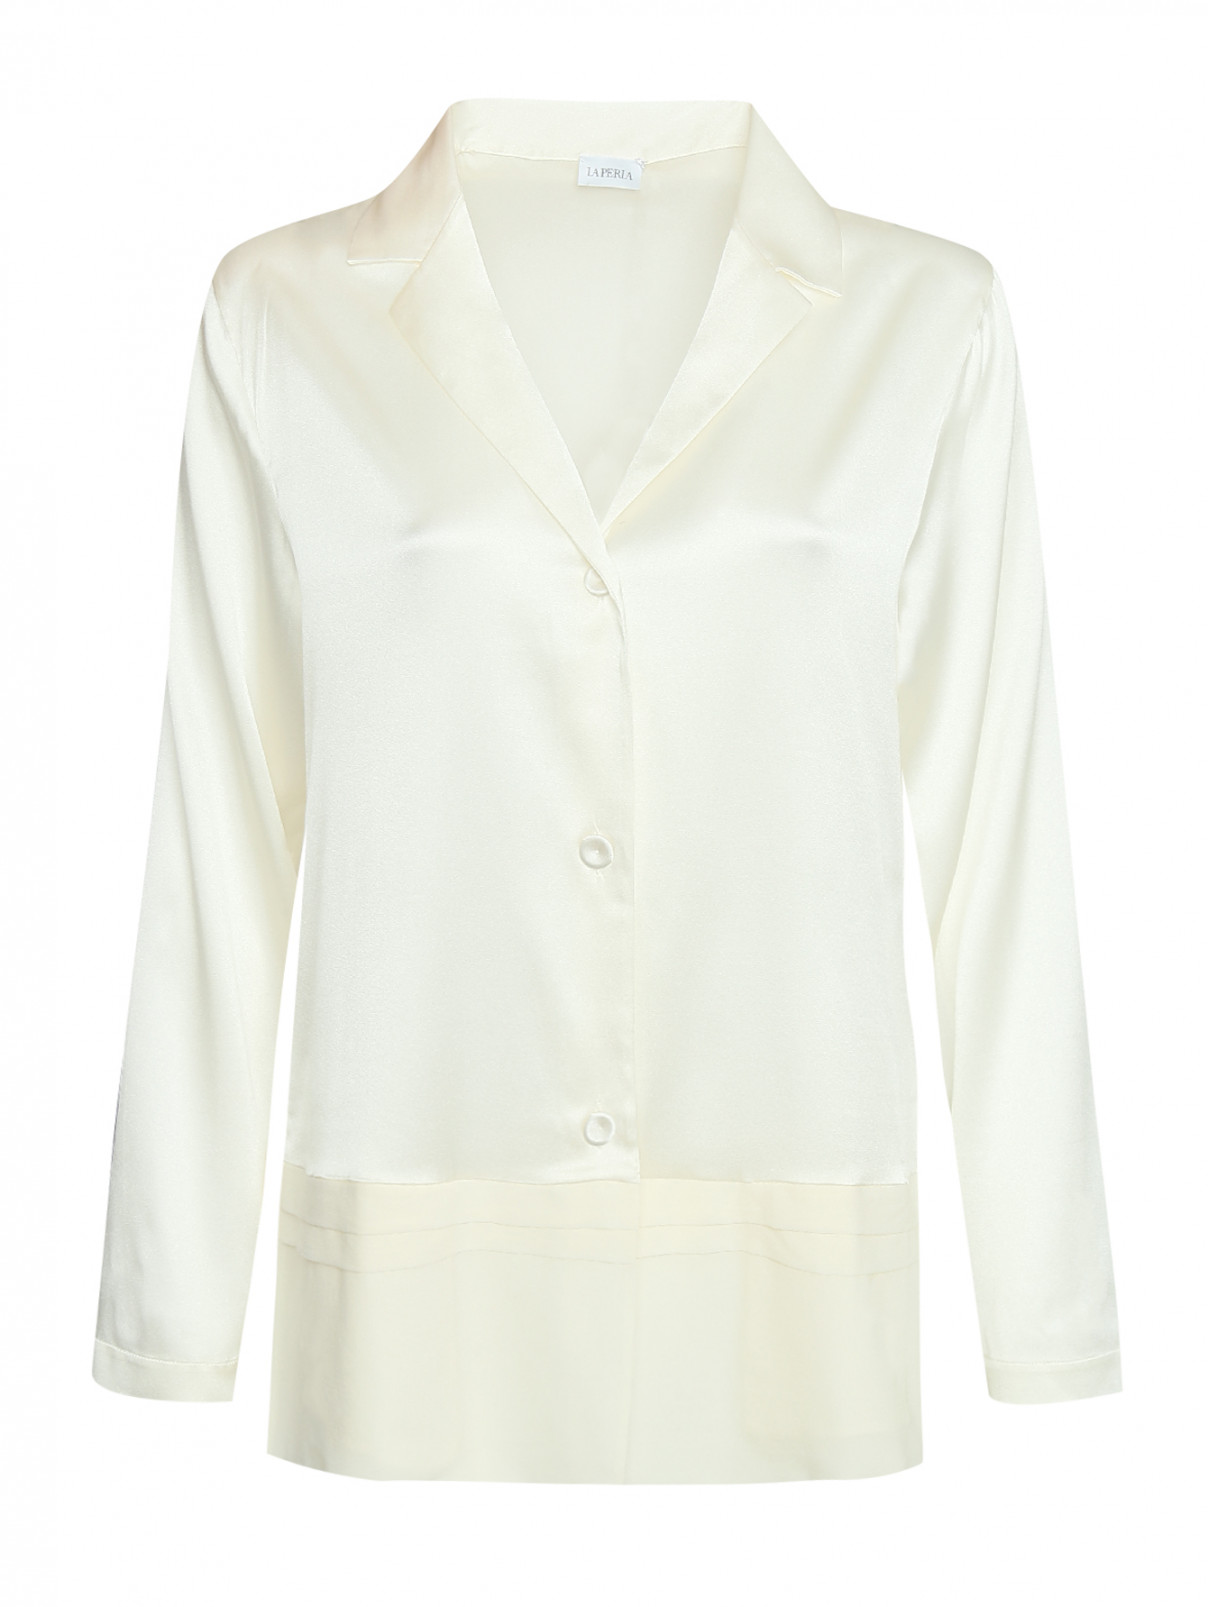 Рубашка шелковая на пуговицах La Perla  –  Общий вид  – Цвет:  Белый